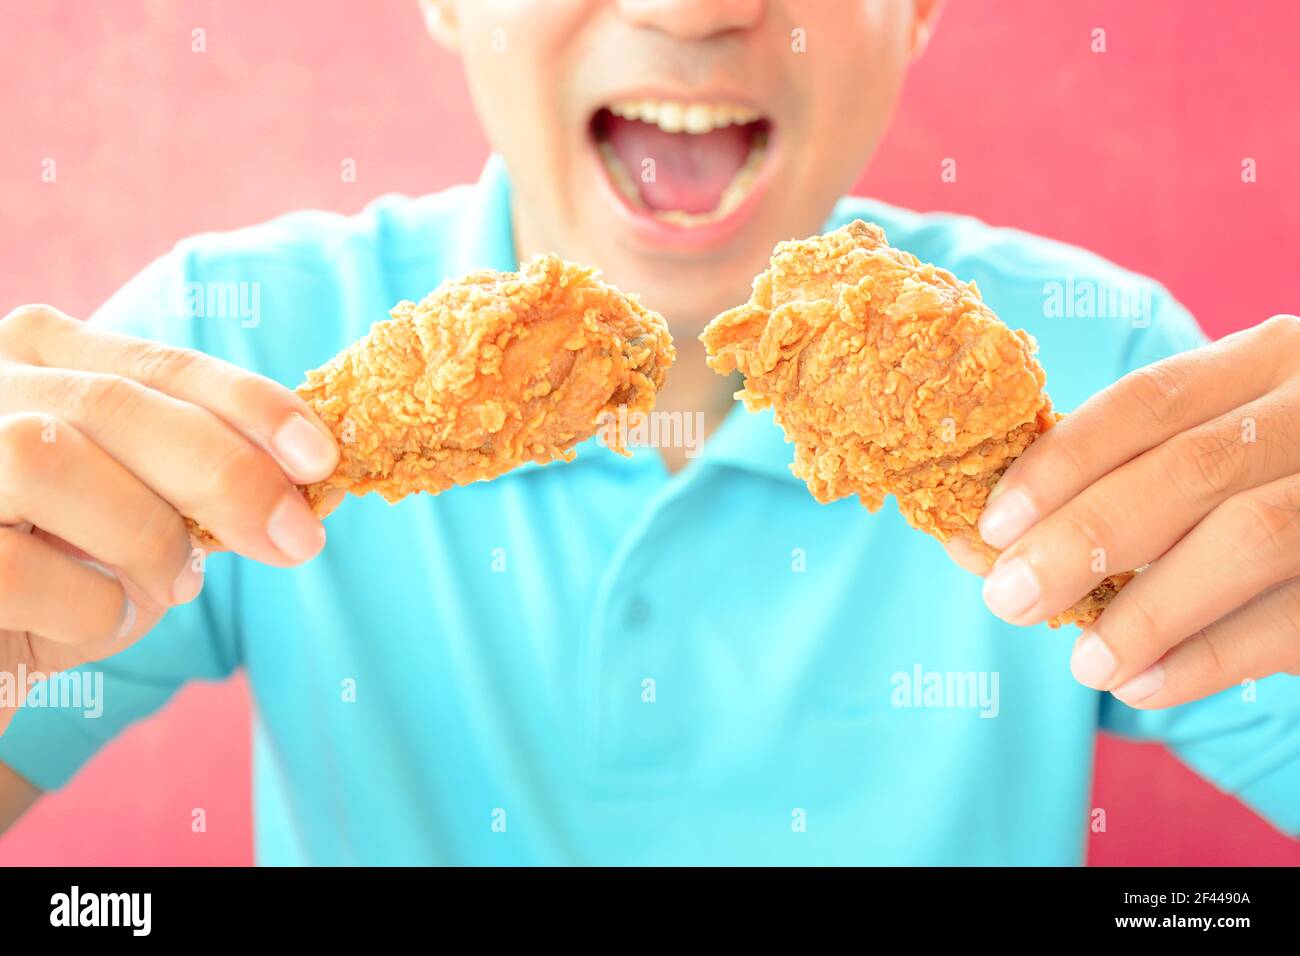 Ein Mann mit Öffnung Mund über frittierte essen Hähnchenbeine oder Drumsticks Stockfoto